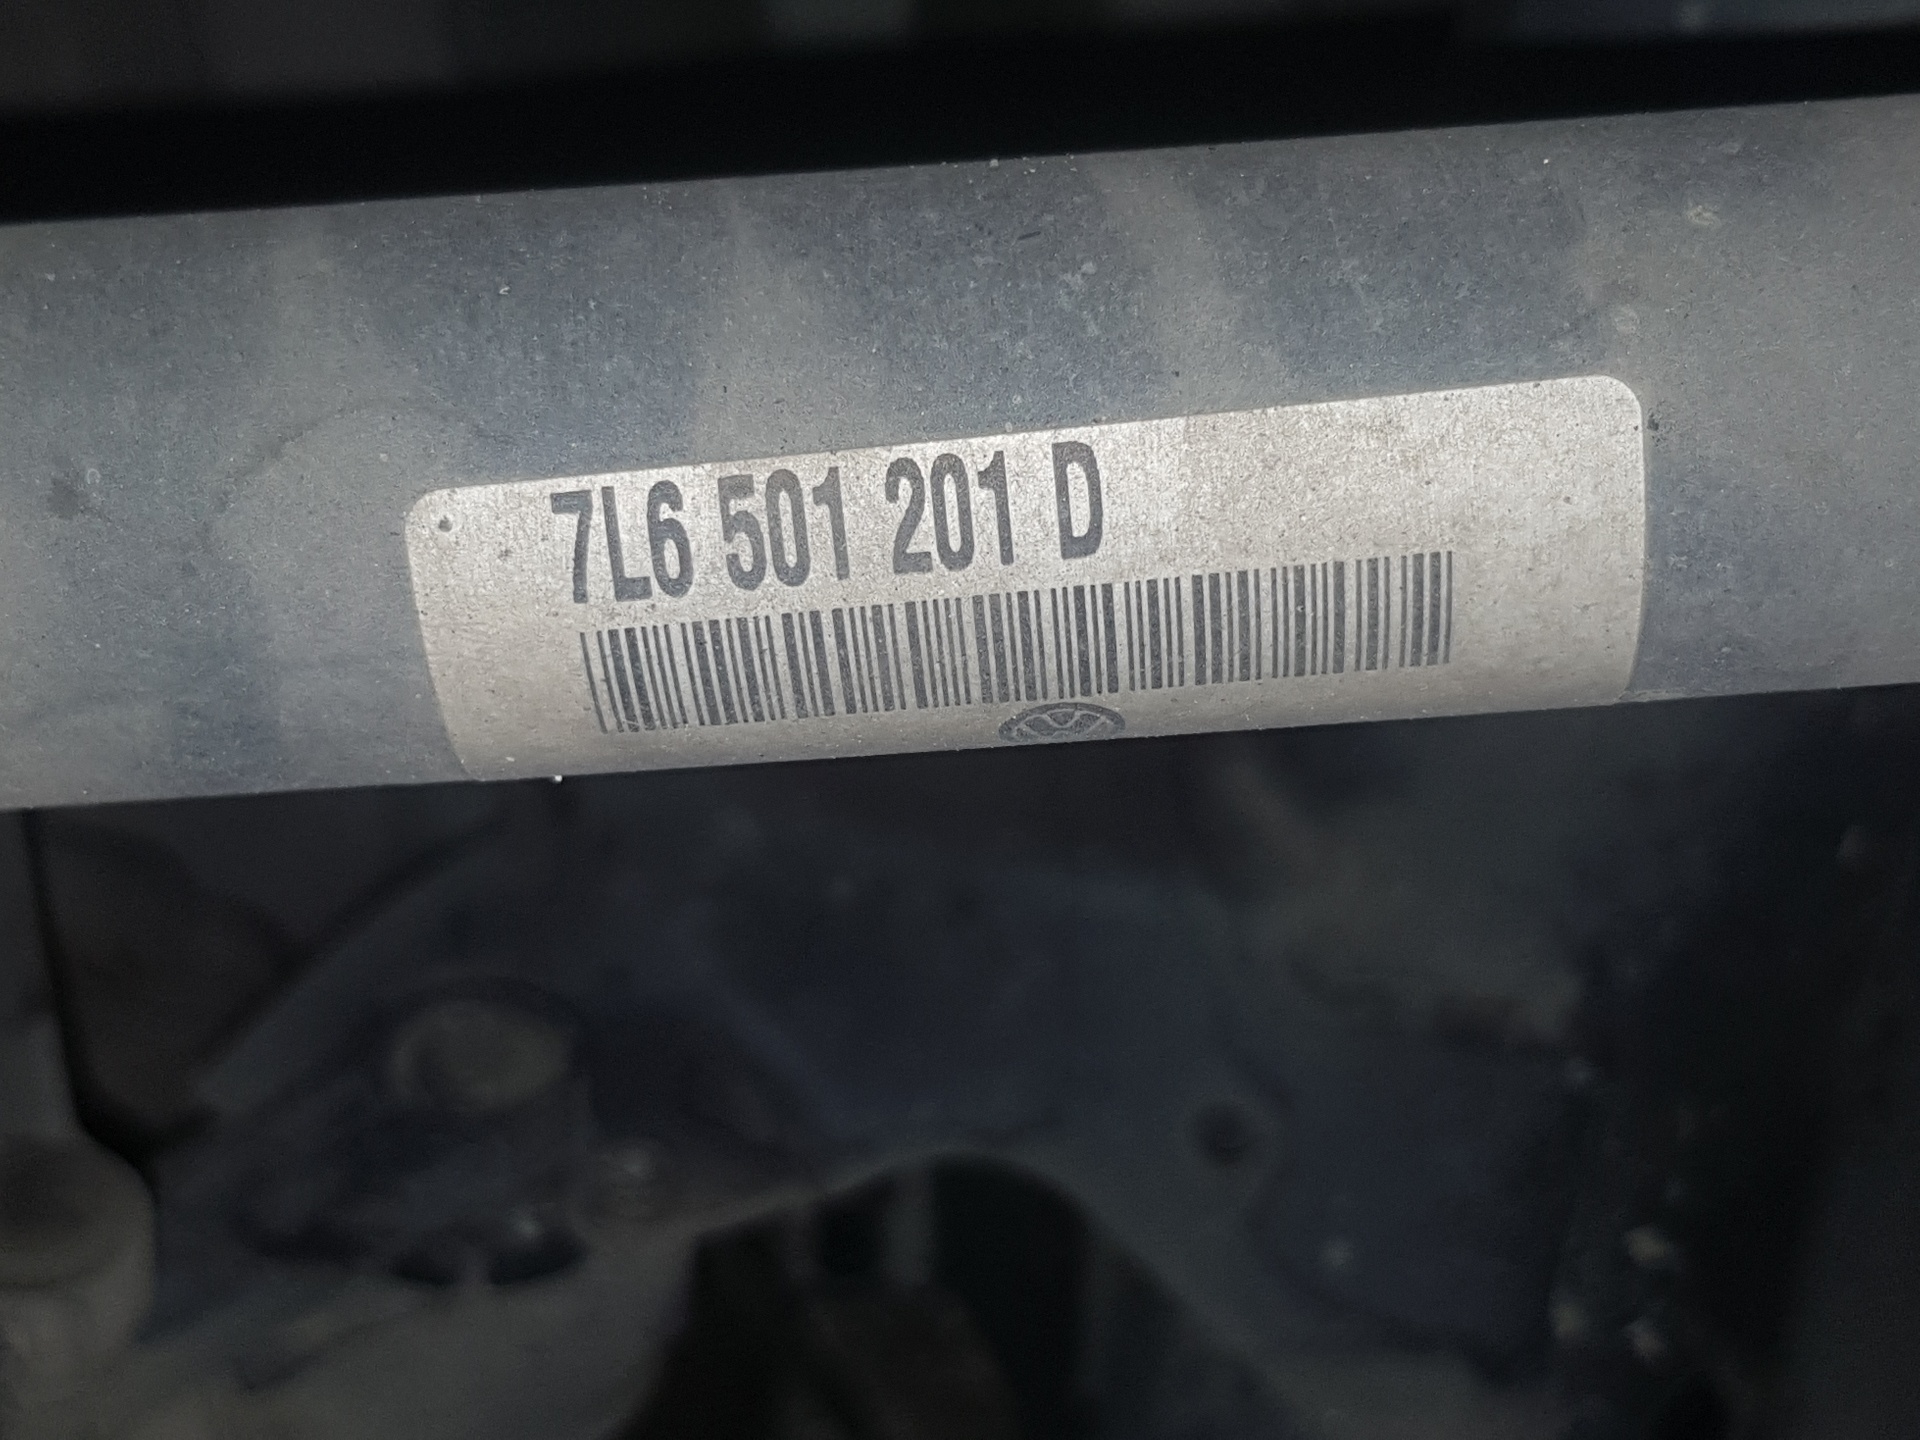 VOLKSWAGEN Touareg 1 generation (2002-2010) Rear Left Driveshaft 7L6501201D, 7L6501201D 25238403